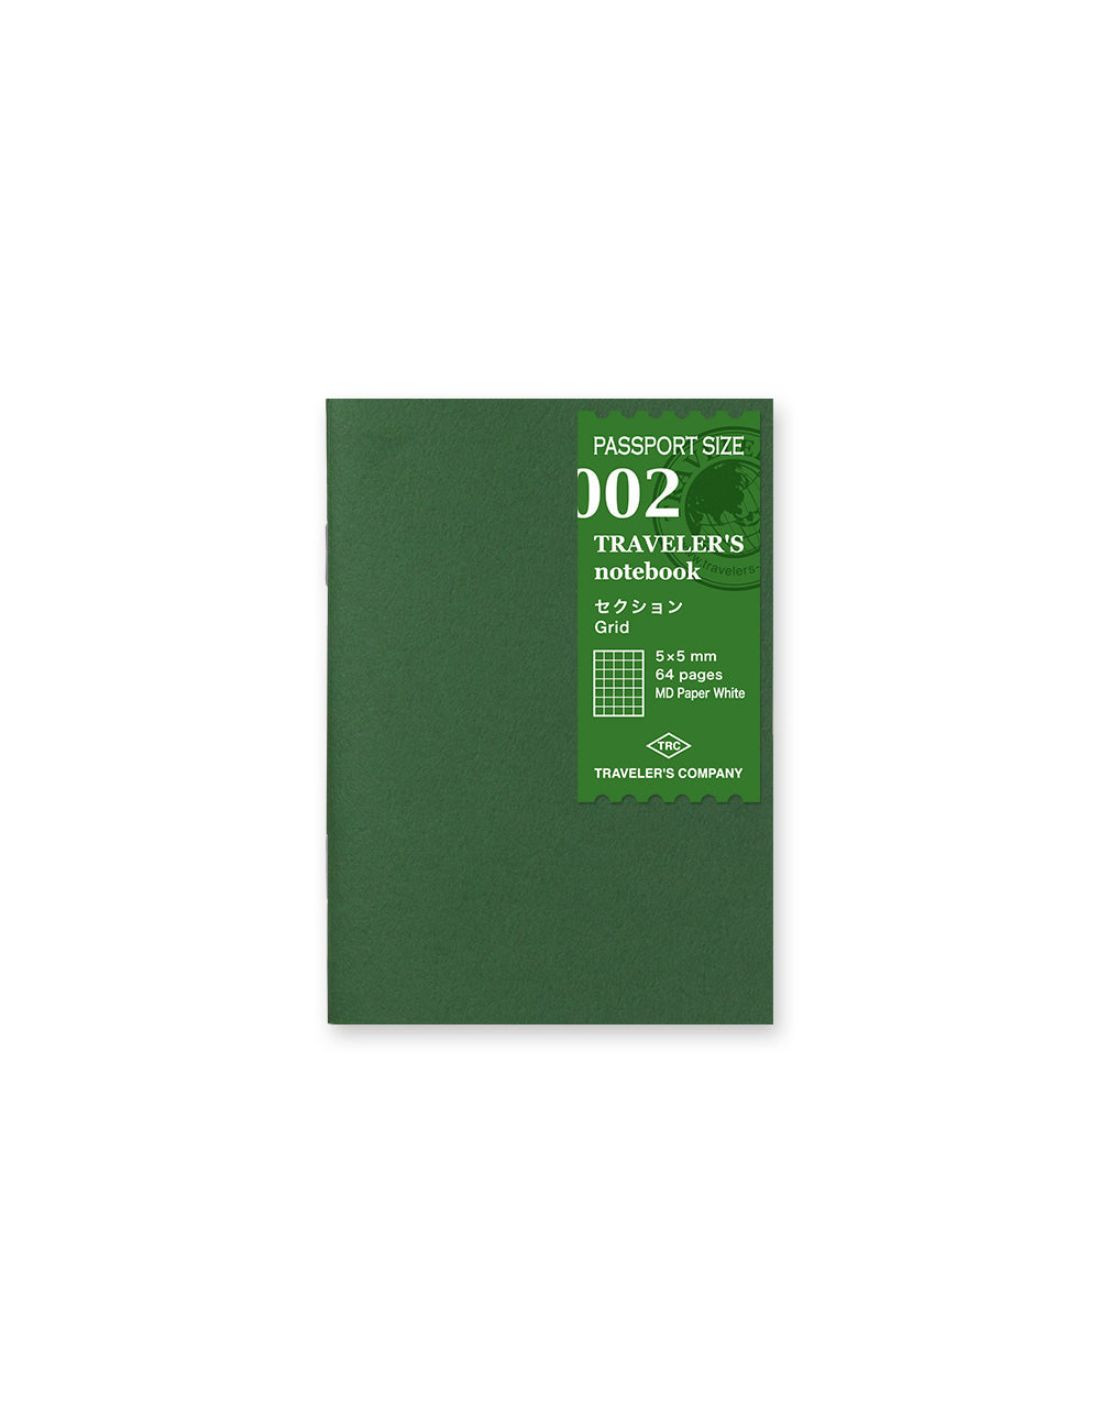 Refill 002 Grid Notebook - Passport size - TRAVELER'S notebook